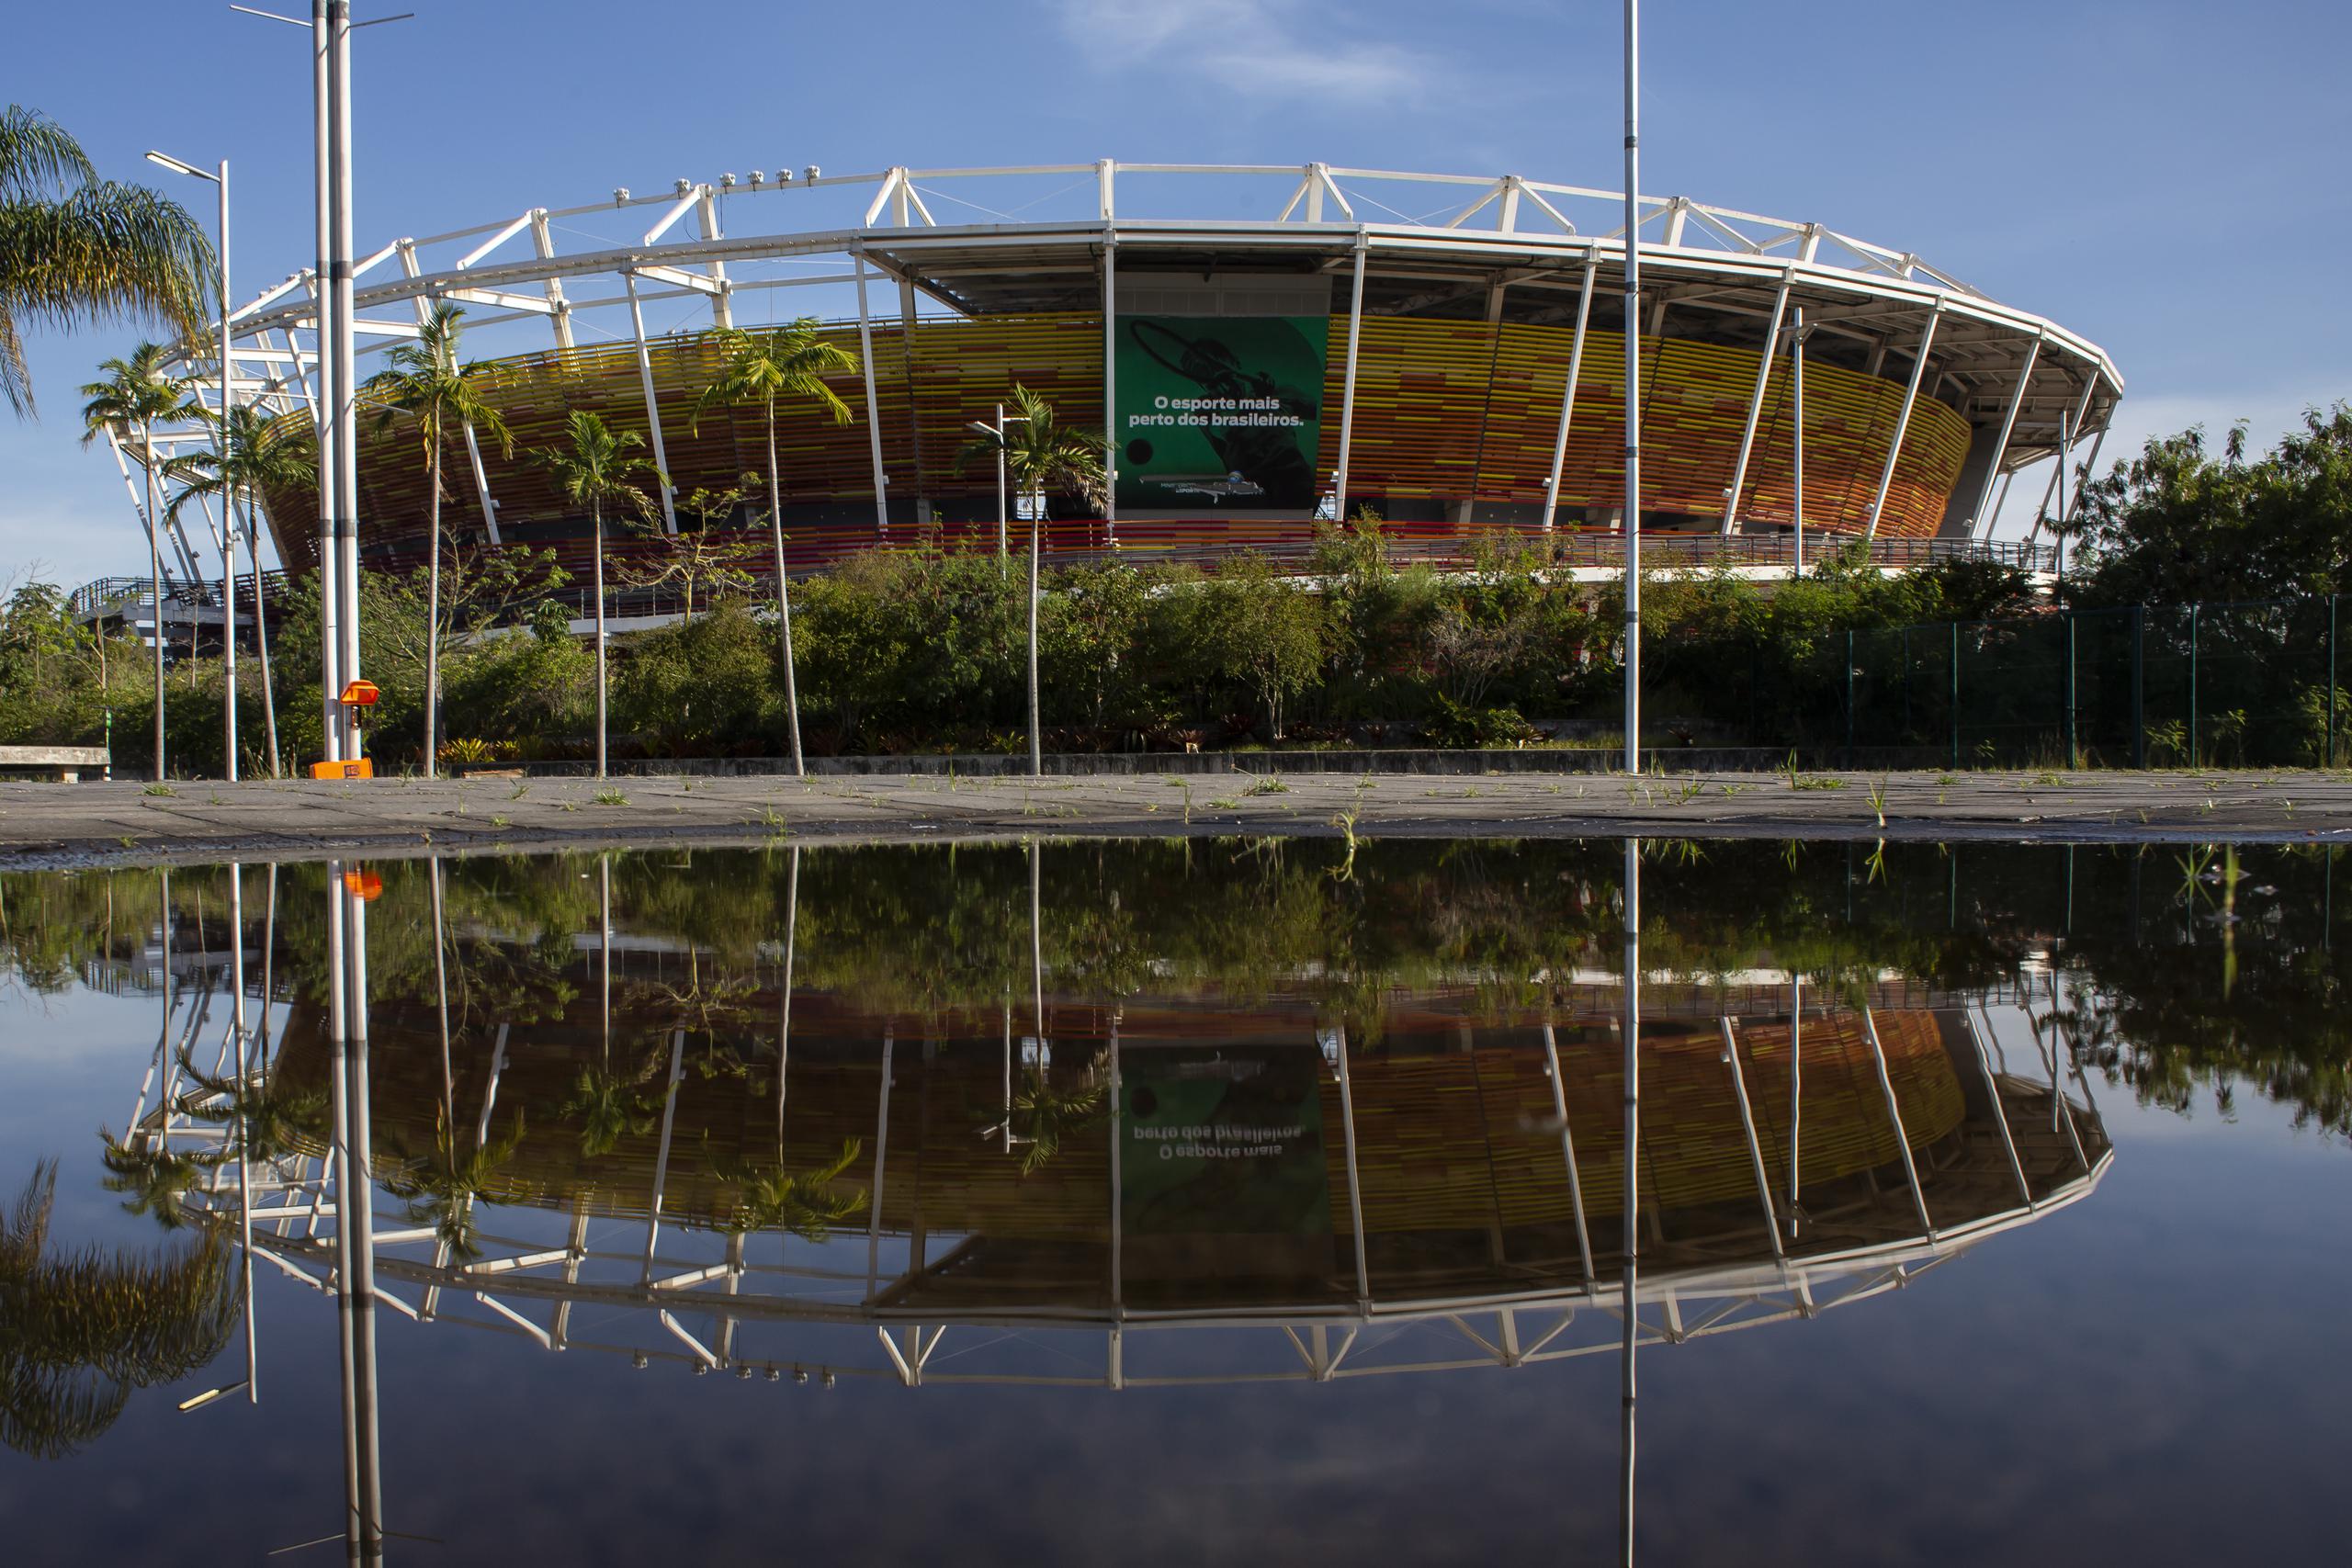 Así luce hoy el Estadio de Tenis en el Parque Olímpico de Río de Janeiro, donde Mónica Puig ganó su medalla de oro. El estadio aparece reflejado en las aguas estancadas en sus cercanía. Muchas de las instalaciones usadas en los Juegos Olímpicos de 2016 no están siendo usadas.